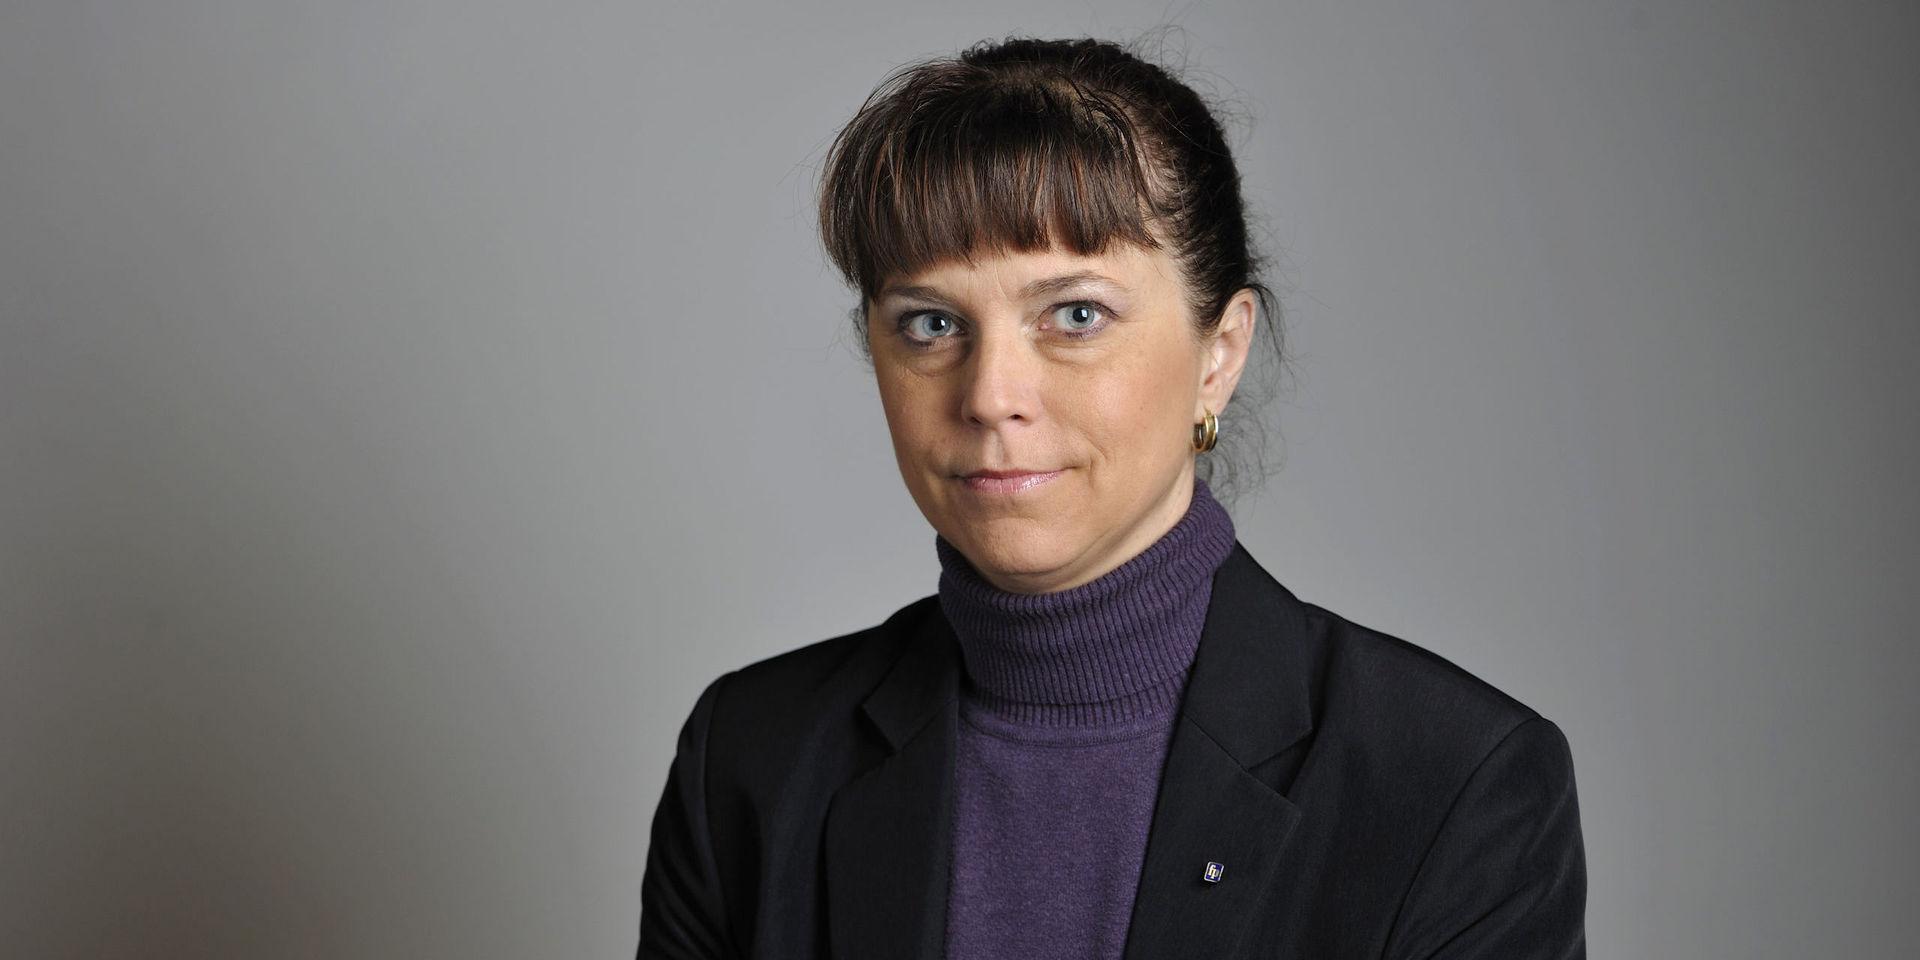 Politiker kan agera olämpligt – även när regler följs. Riksdagsledamoten Emma Carlsson-Löfdah som tidigare företrädde Liberalerna men som nu är politisk vilde. 

